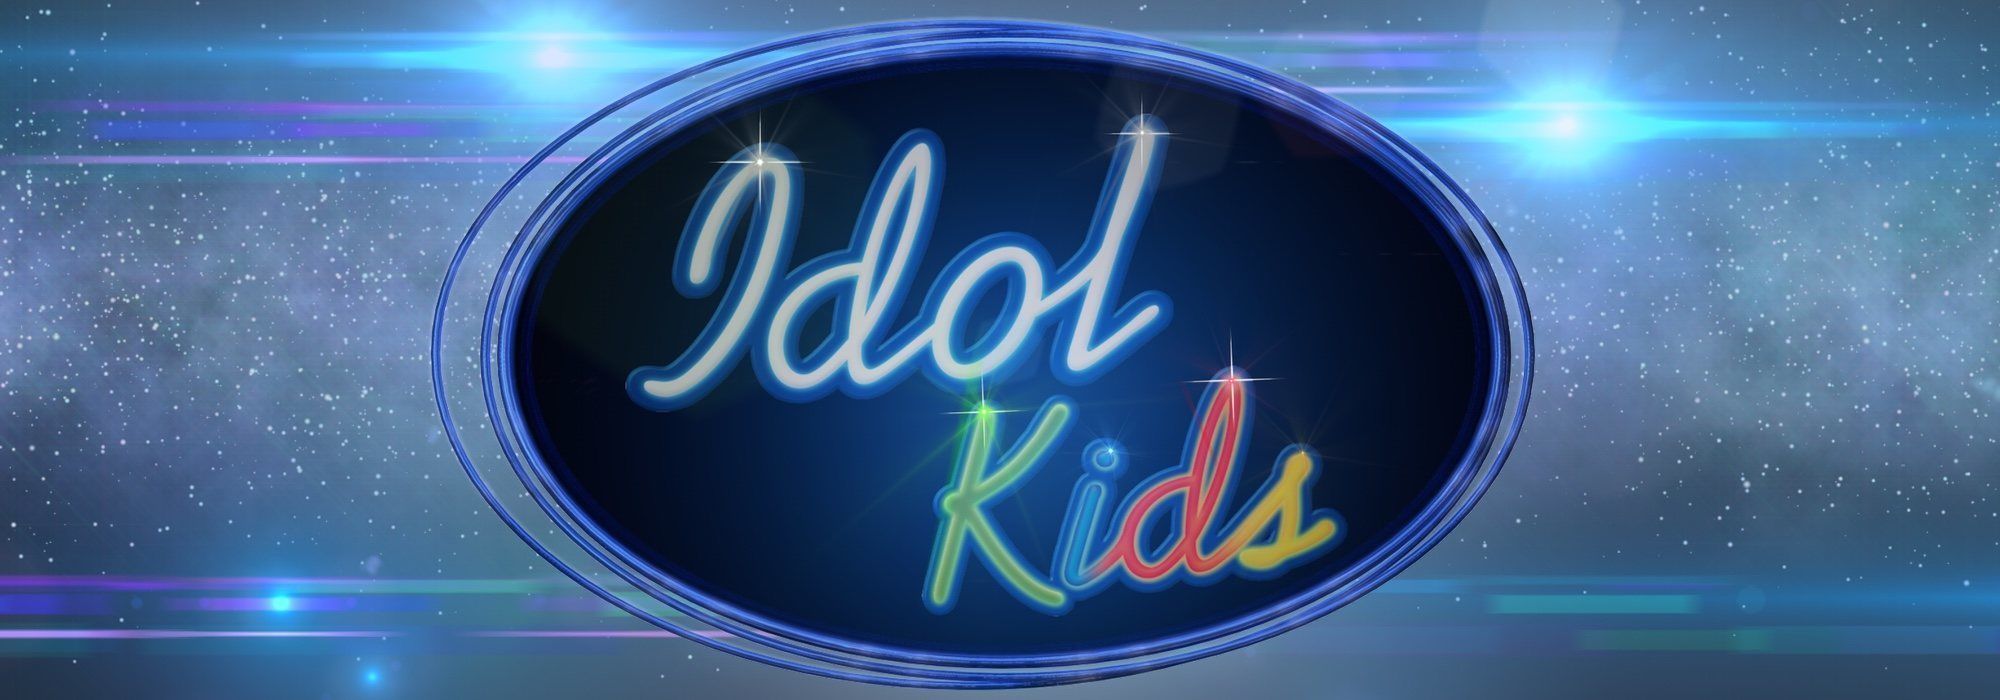 'Idol Kids’: el nuevo talent show de Telecinco ya tiene jurado